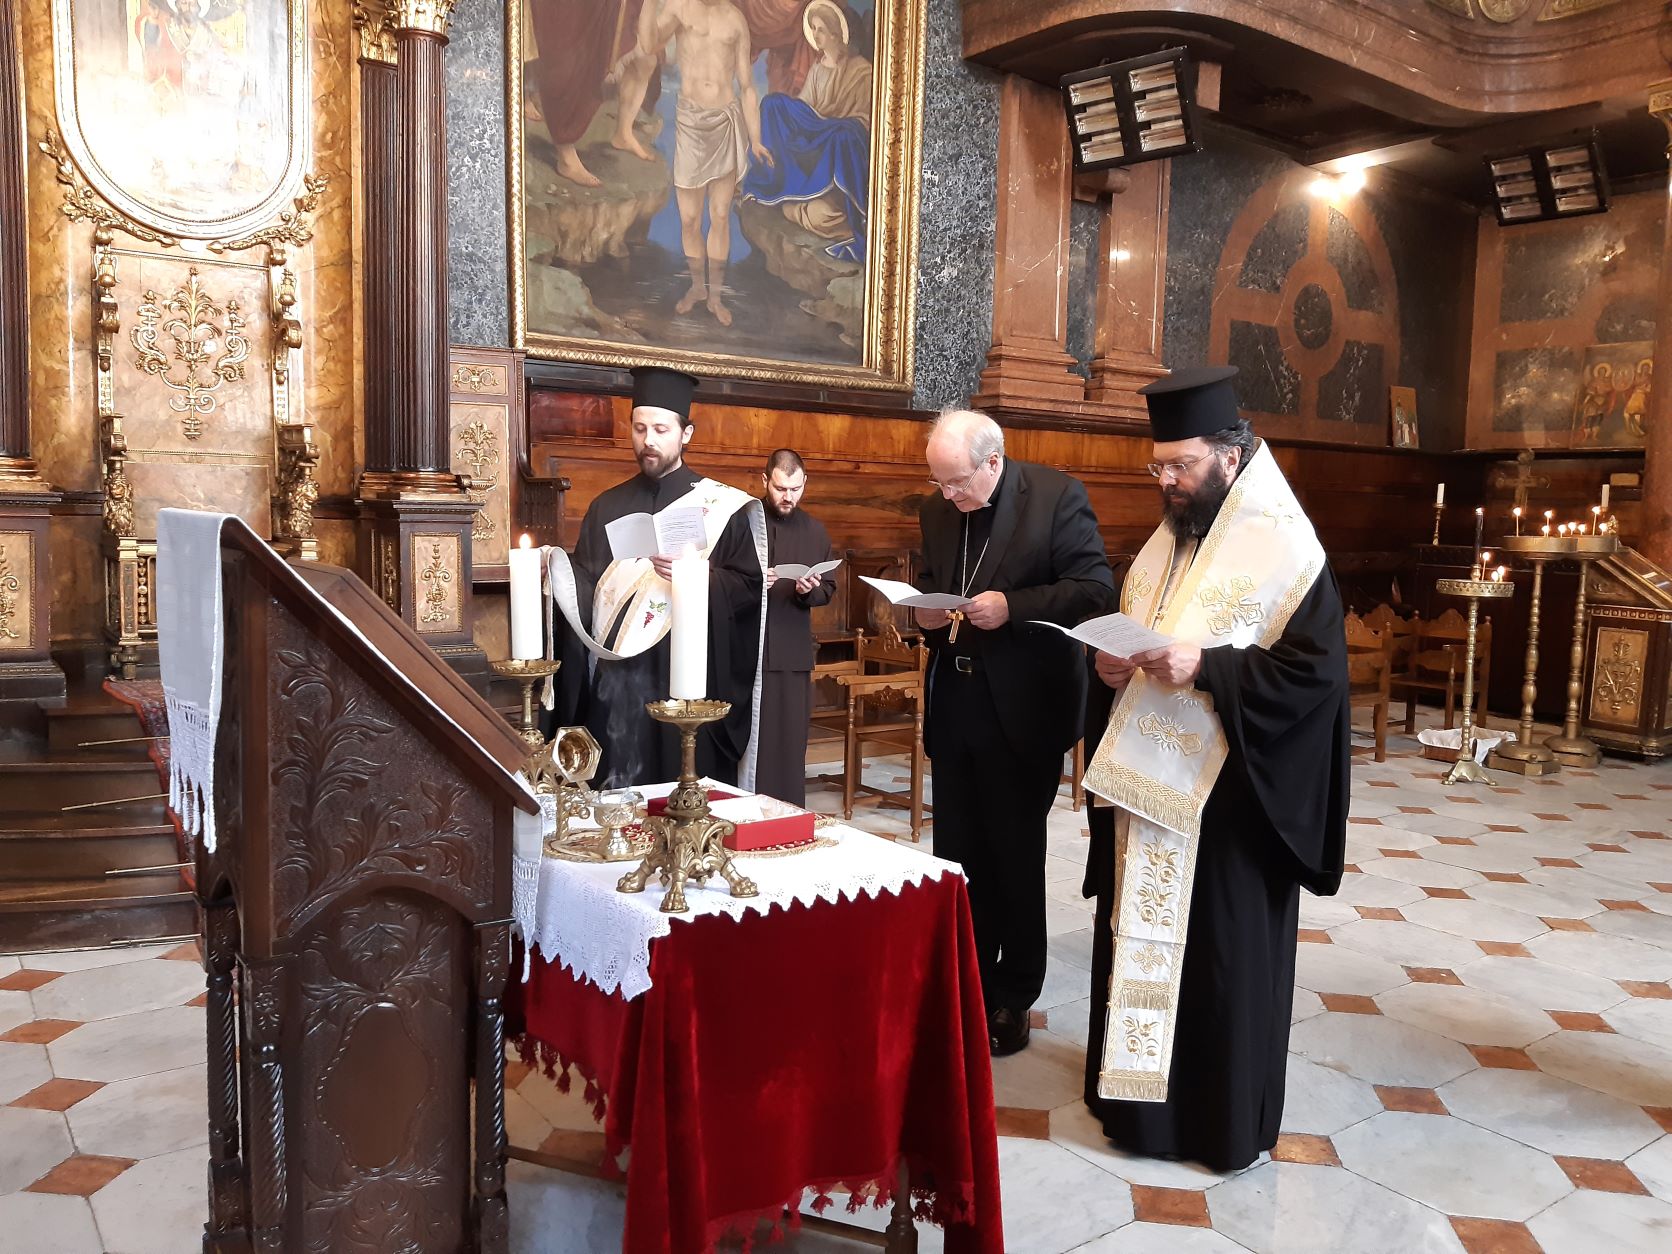 Les saintes reliques de saint Grégoire le Théologien ont été offertes à la métropole orthodoxe d’Autriche (Patriarcat oecuménique)